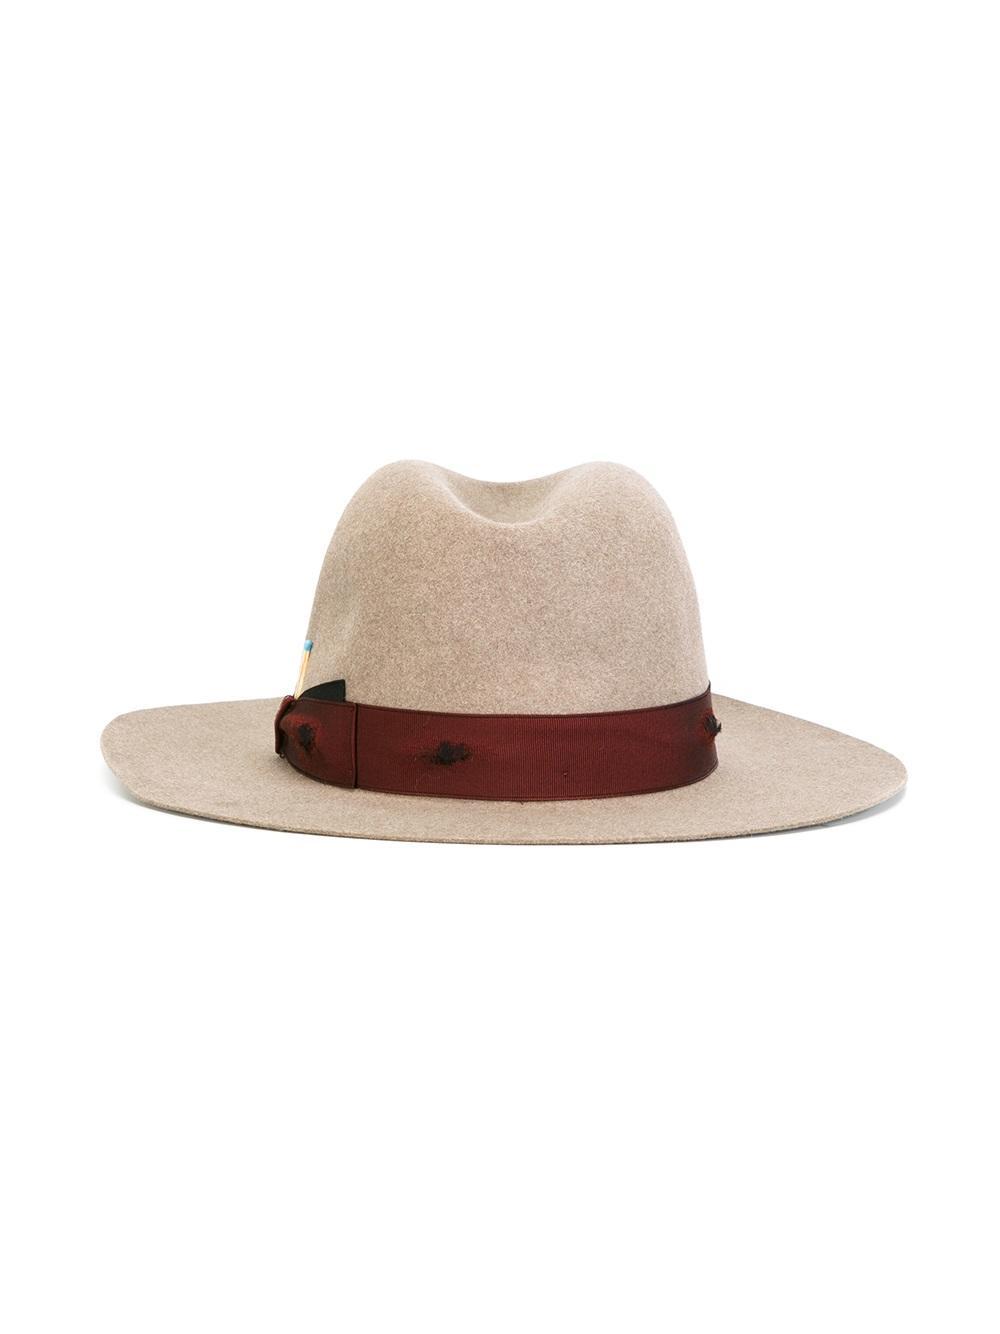 Borsalino Wool 'beaver' Hat for Men - Lyst